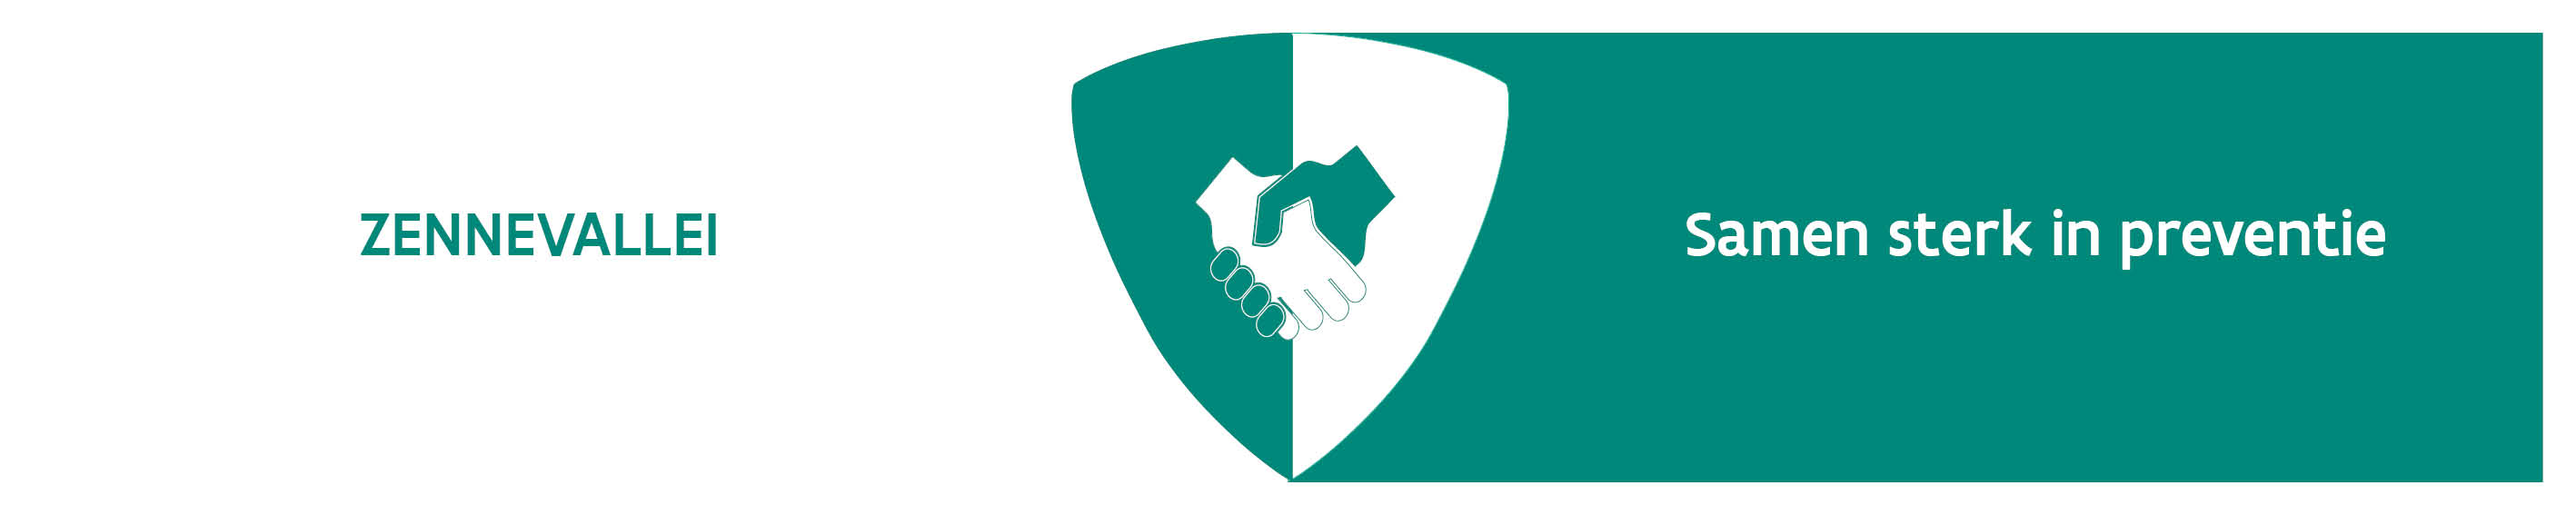 Logo Preventiewerking Zennevallei - Samen sterk in preventie